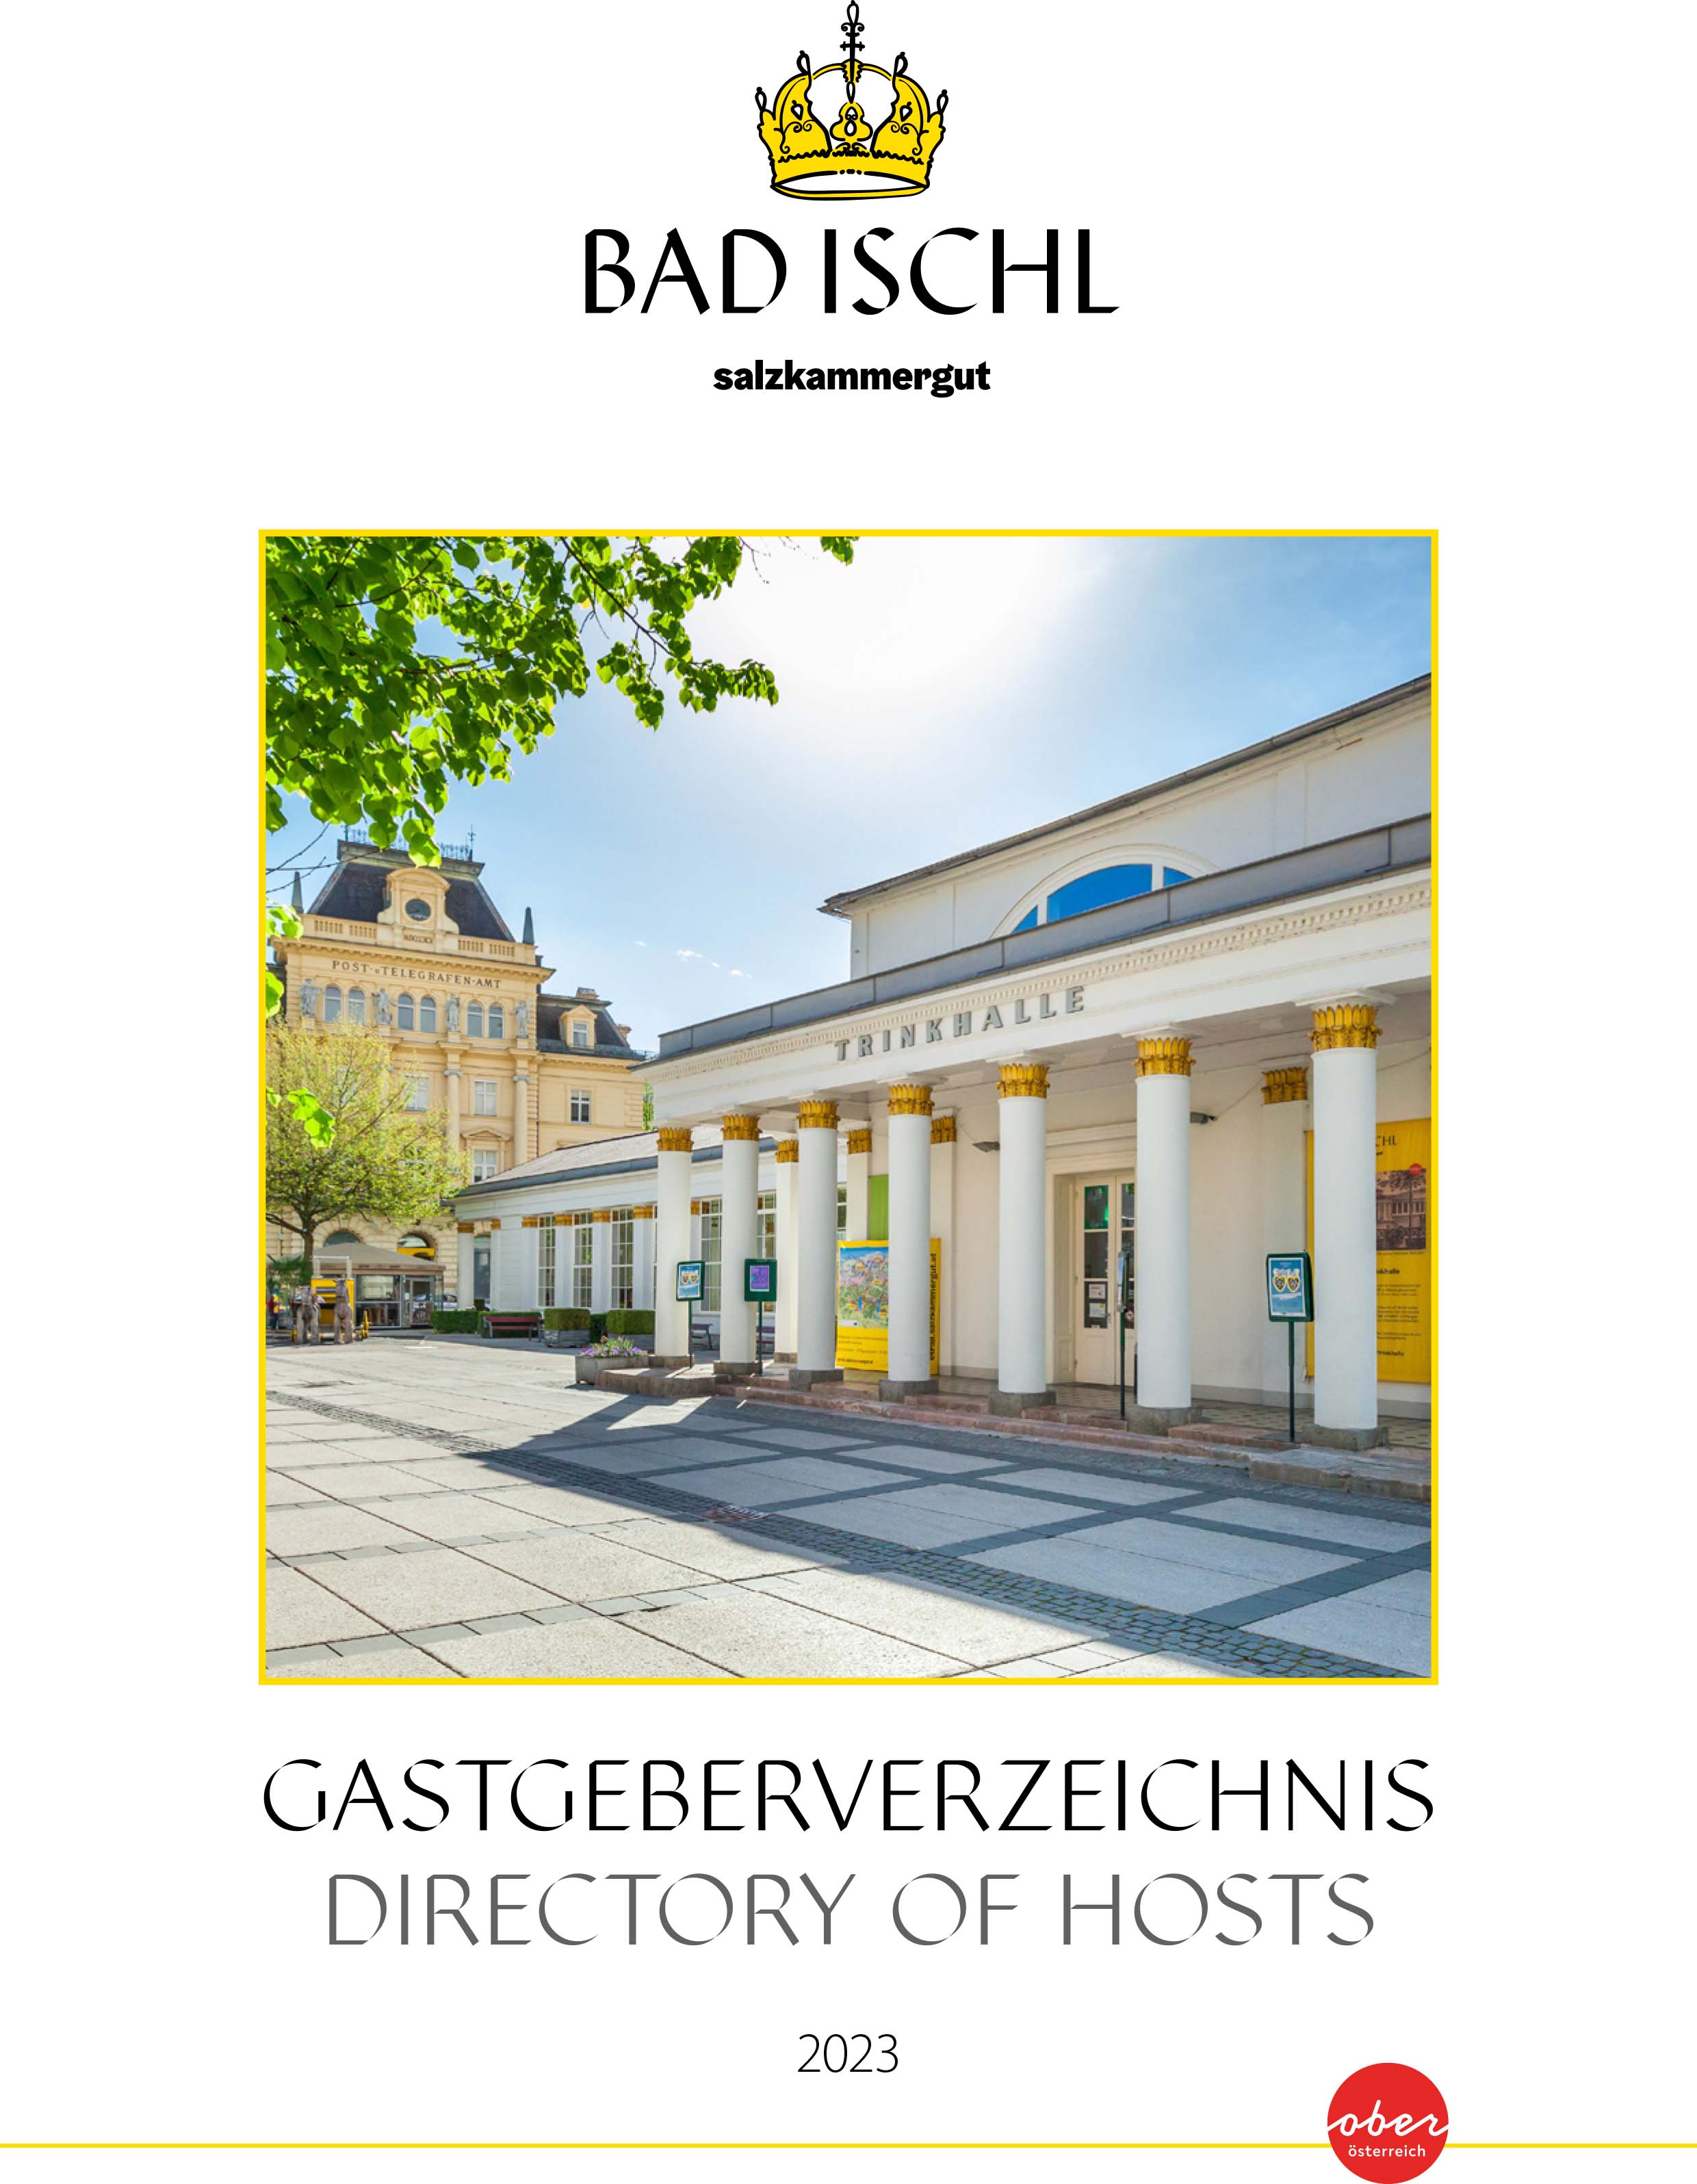 Gastgeberverzeichnis Bad Ischl 2023